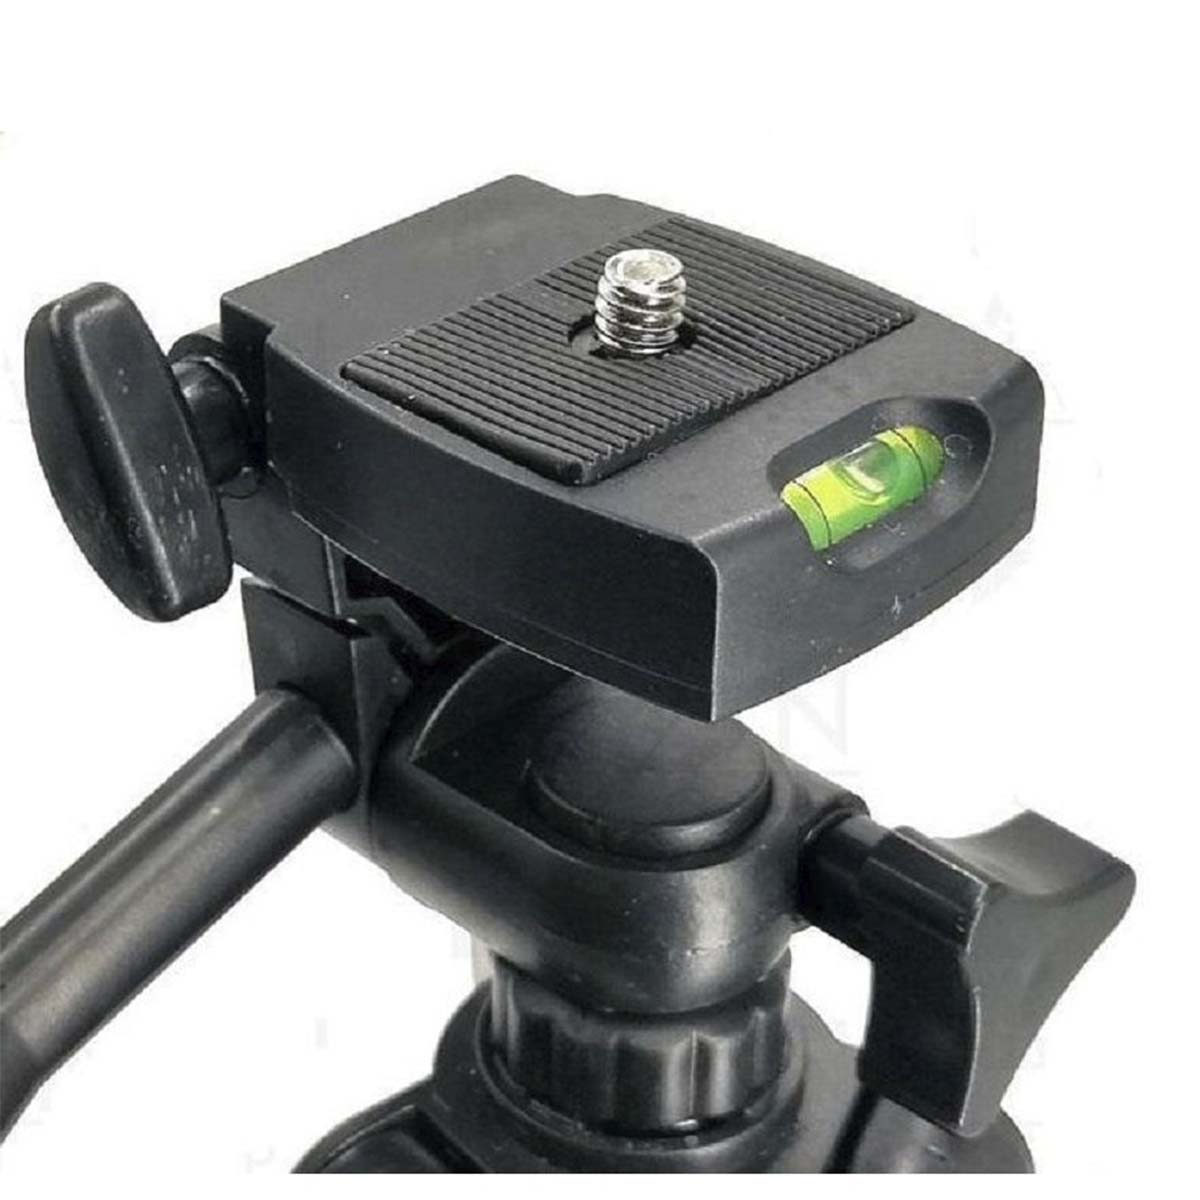 Штатив трипод DK-3888 для камеры и телефона, Bluetooth кнопка, цвет серебристый